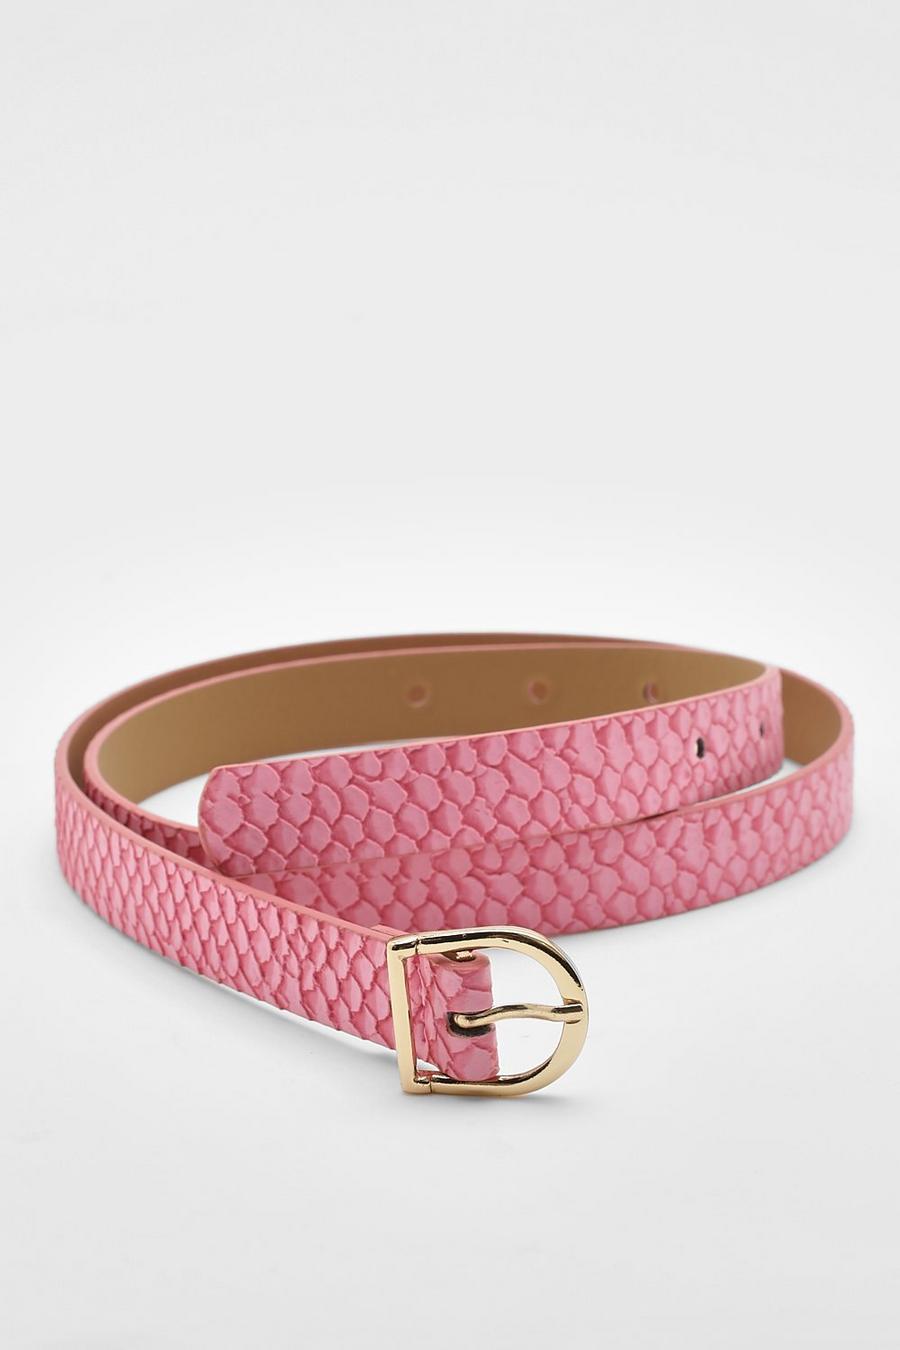 Cinturón de cuero sintético efecto serpiente, Pink rosa